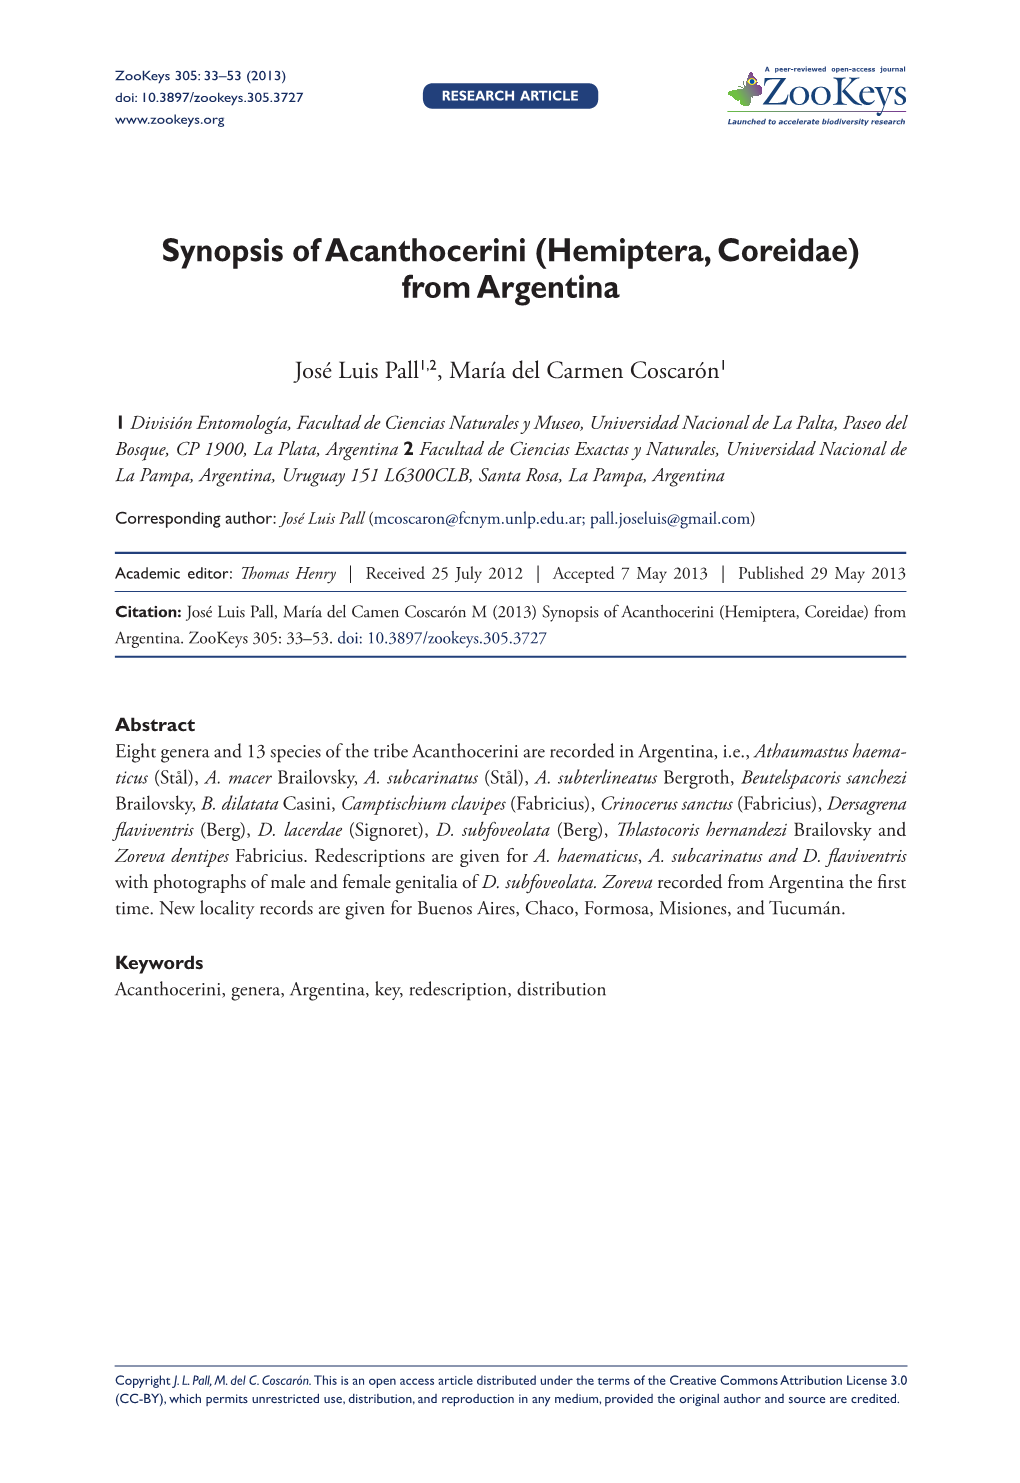 Synopsis of Acanthocerini (Hemiptera, Coreidae) from Argentina